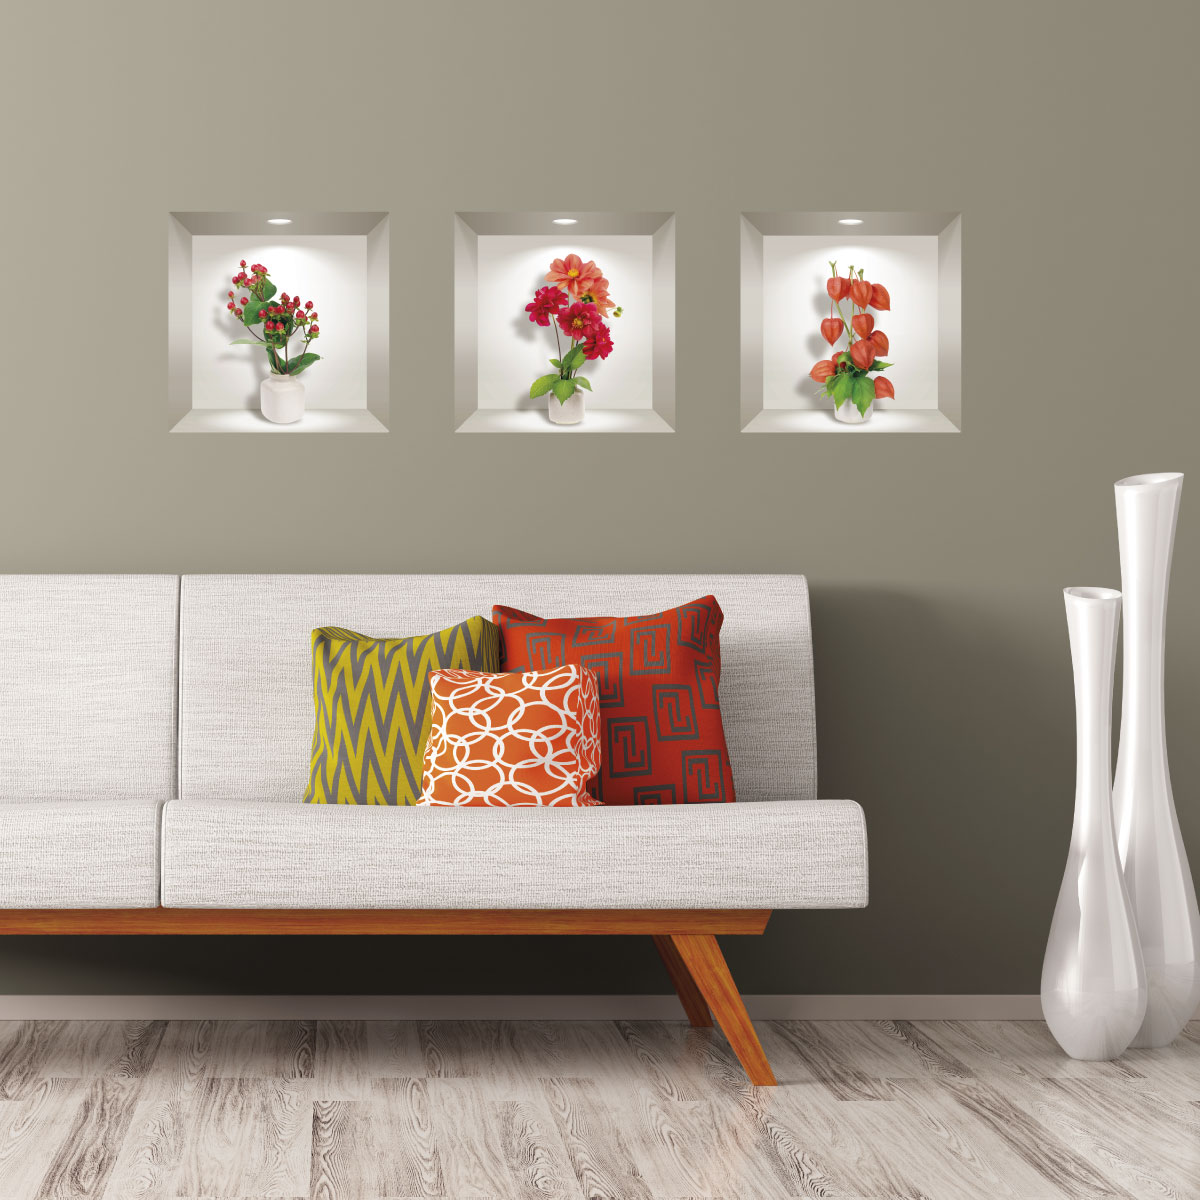 3 vinilo efecto 3D Dalia roja, naranja y flores de grosella